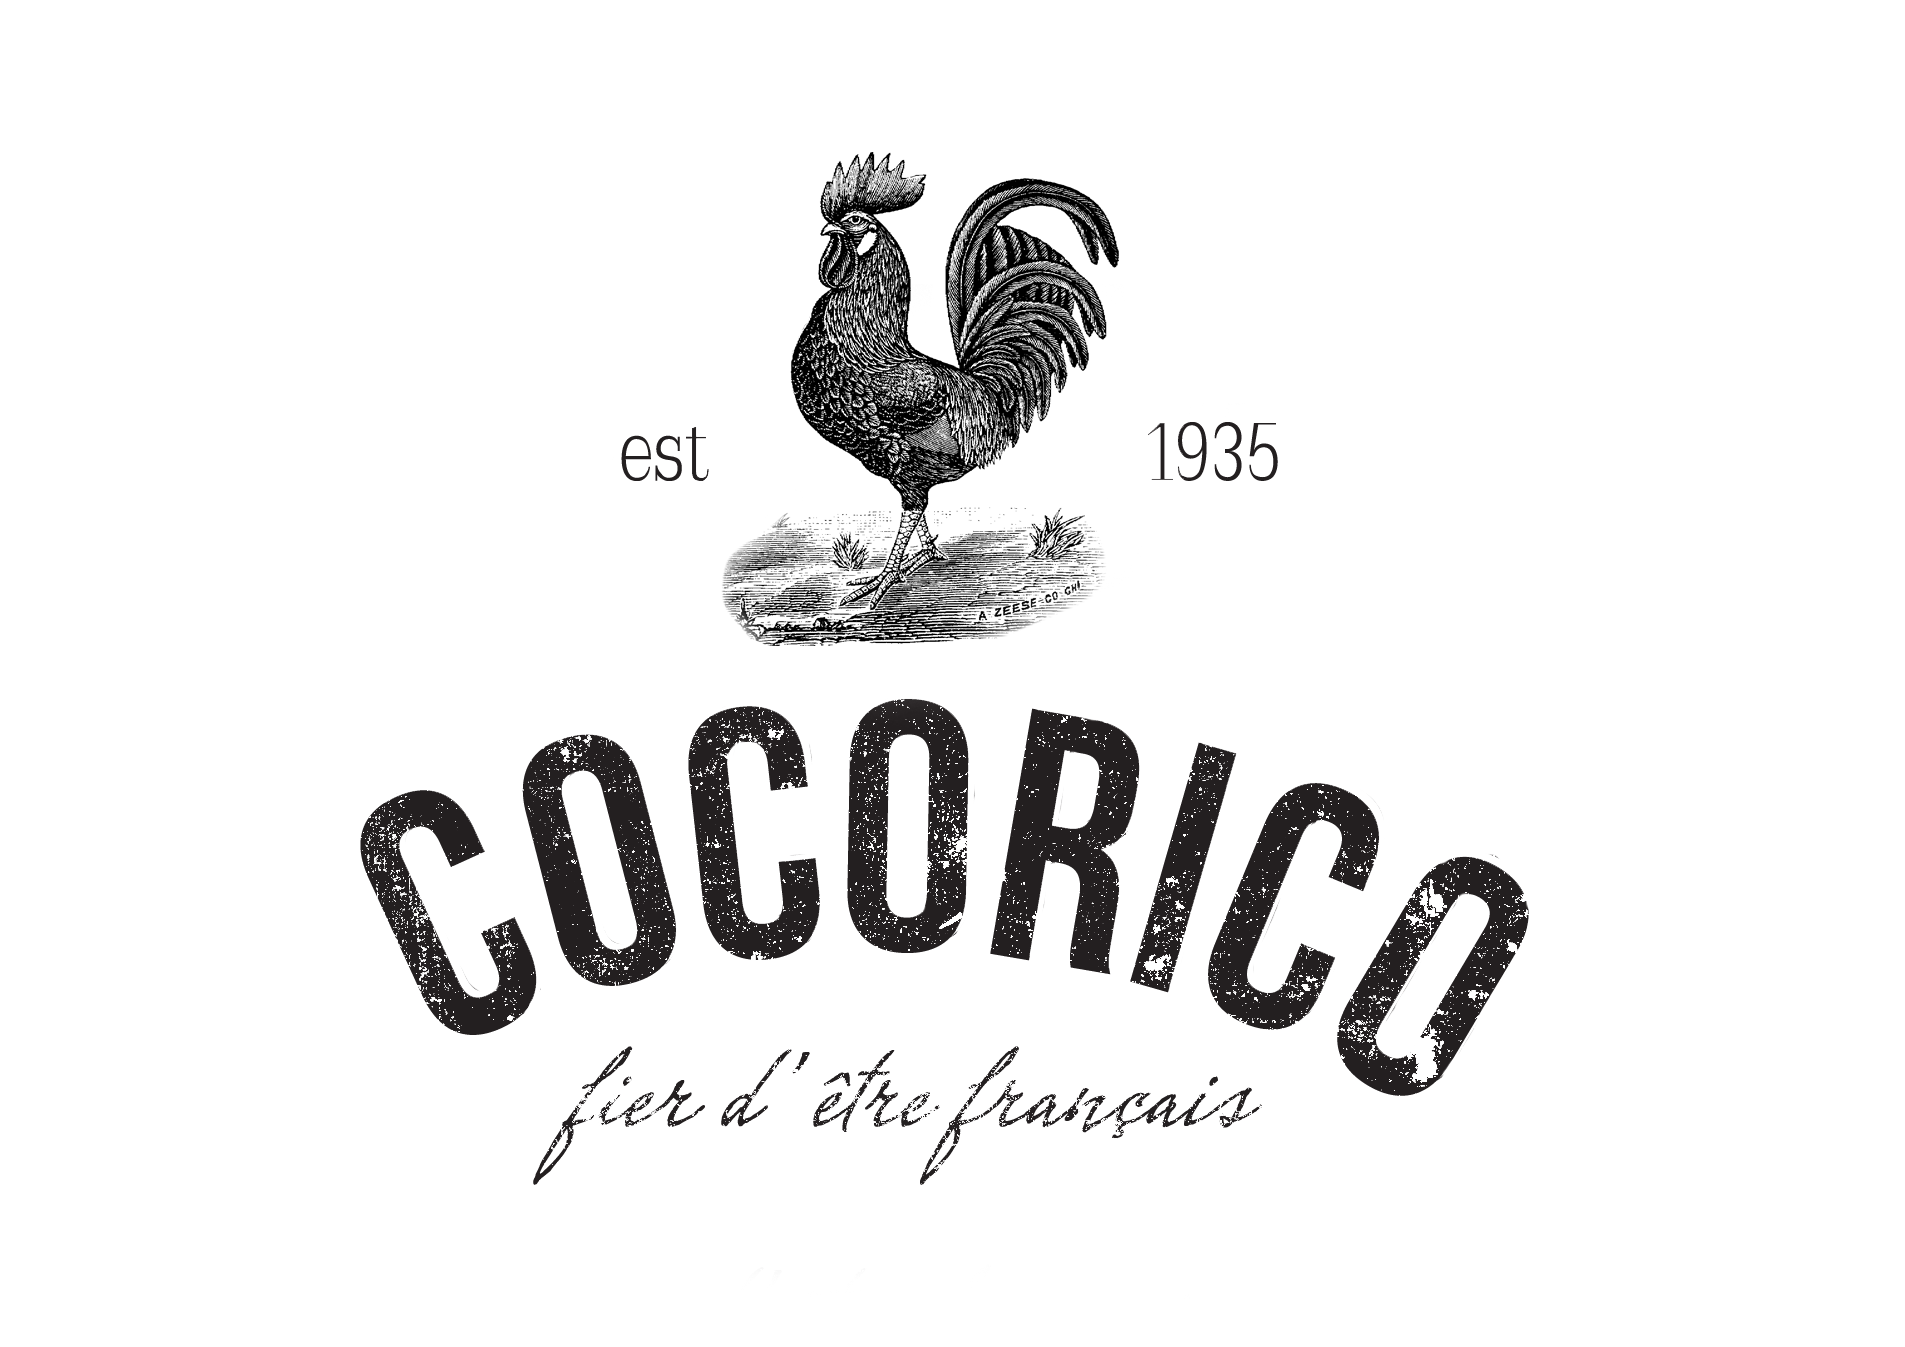 Cocorico Link